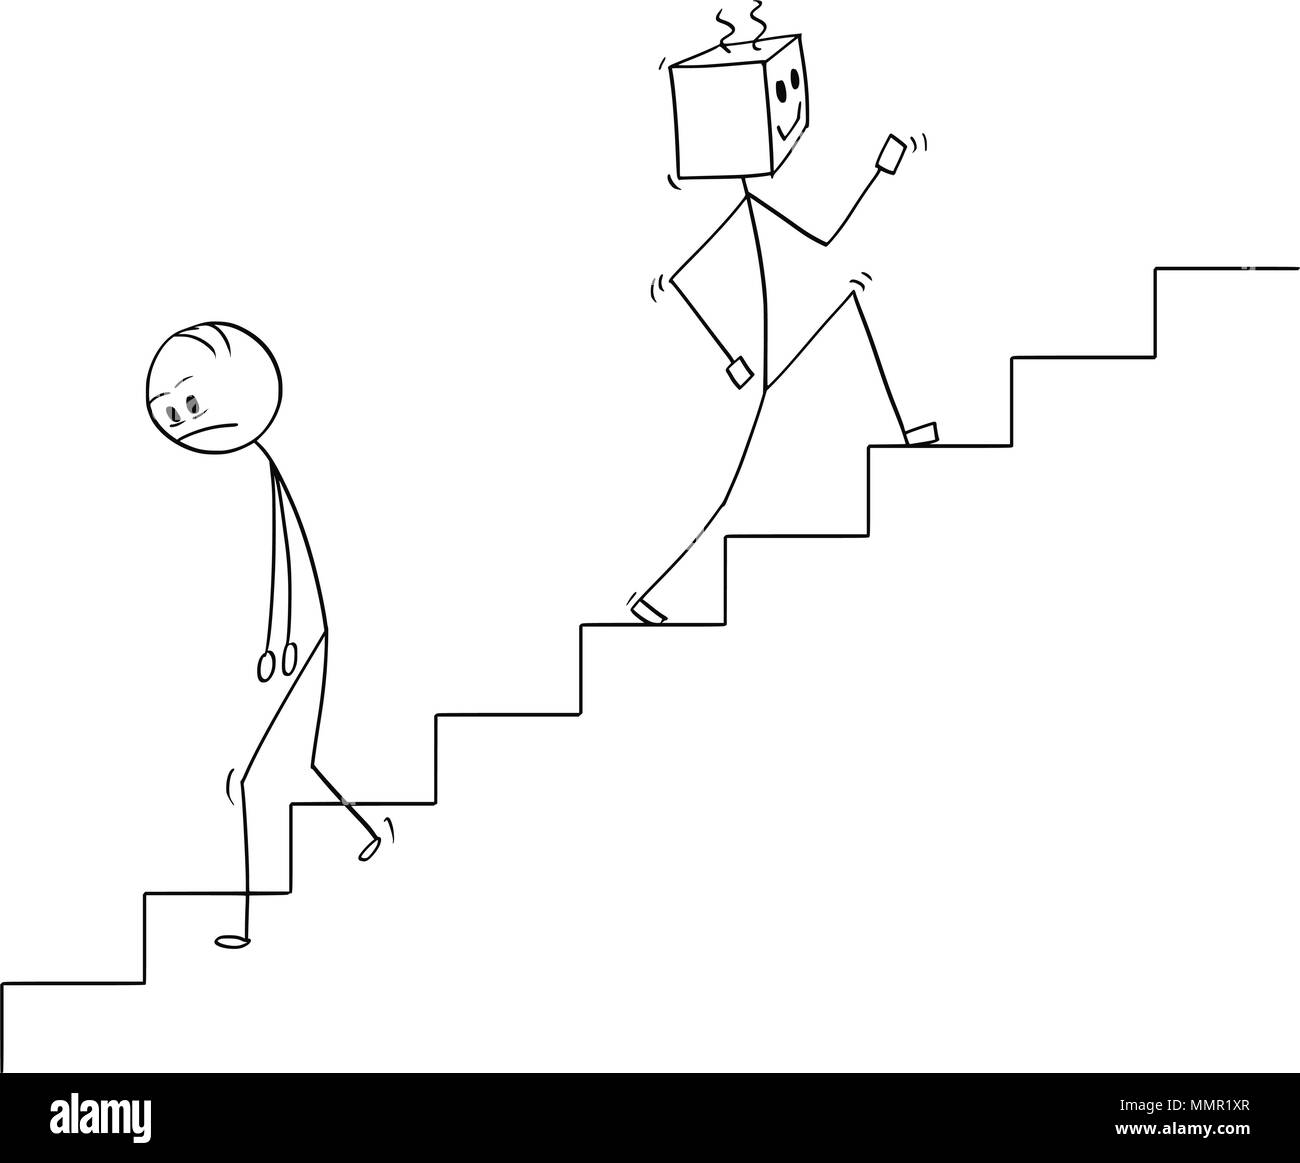 Caricature des droits de descendre les escaliers et le robot se déplacer vers le haut Illustration de Vecteur